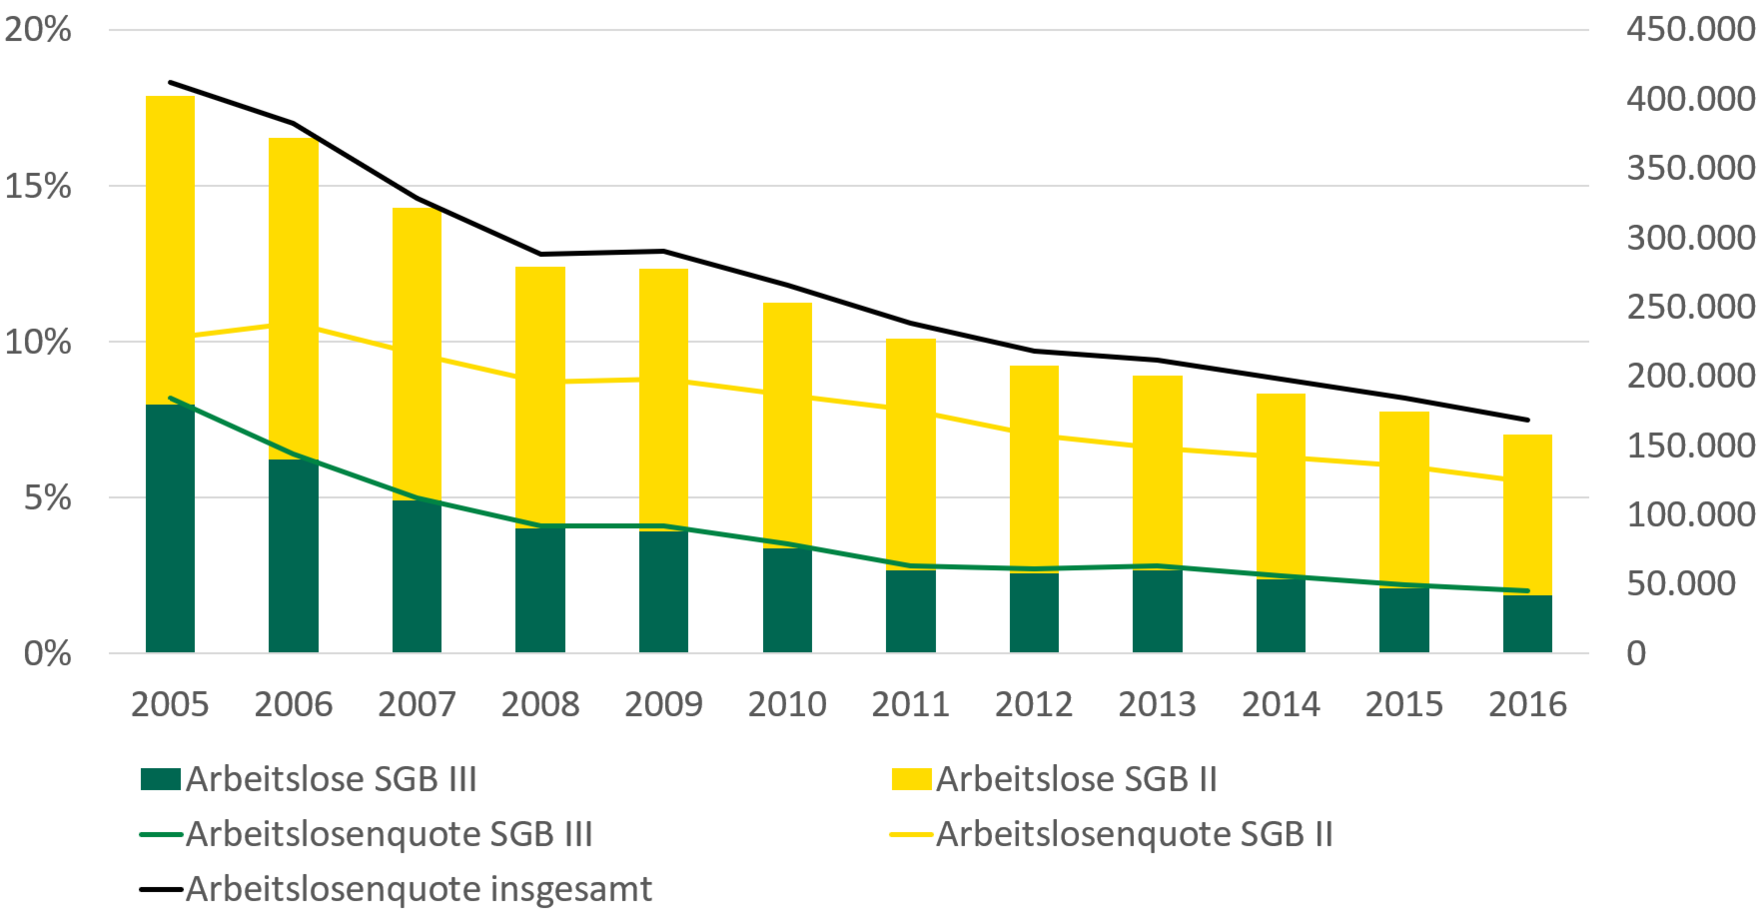 Die Arbeitslosenquote in Sachsen sank von 18 Prozent im Jahr 2005 auf 8 Prozent in 2016. Die Arbeitslosenquote nach SGB II sank im gleichen Zeitraum von 10 auf 6 Prozent, die Arbeitslosenquote nach SGB III von 8 auf 2 Prozent. Die Zahl der Arbeitslosen sank von 400.000 Personen in 2005 auf 150.000 Personen in 2016.